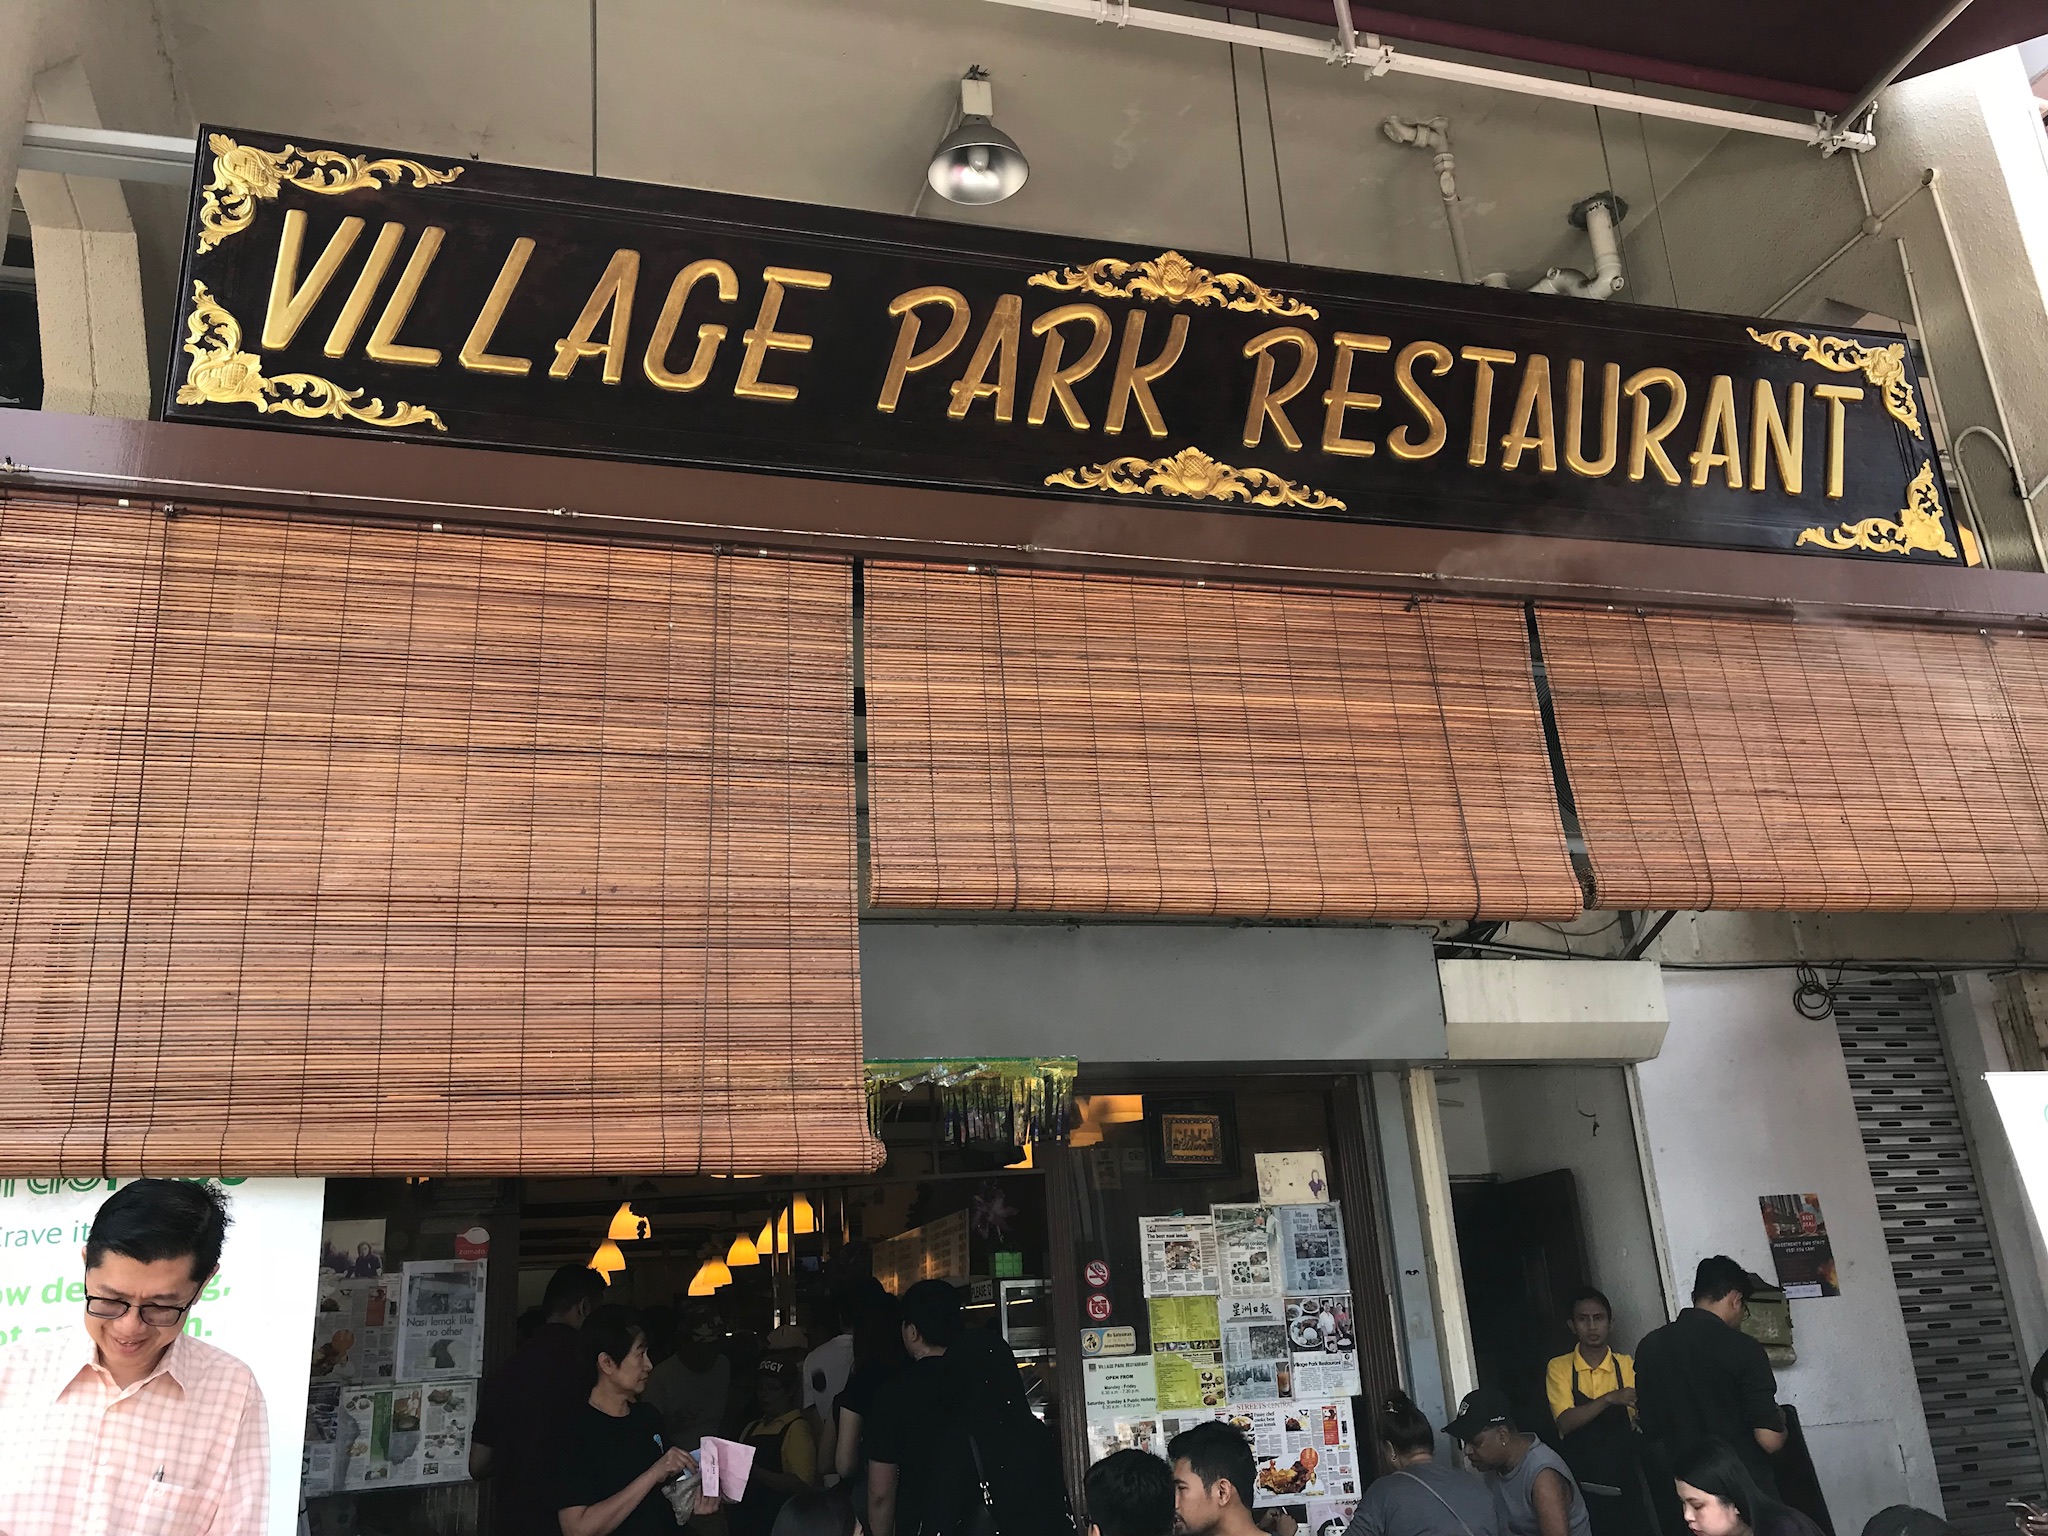 ①Village Park Restaurant